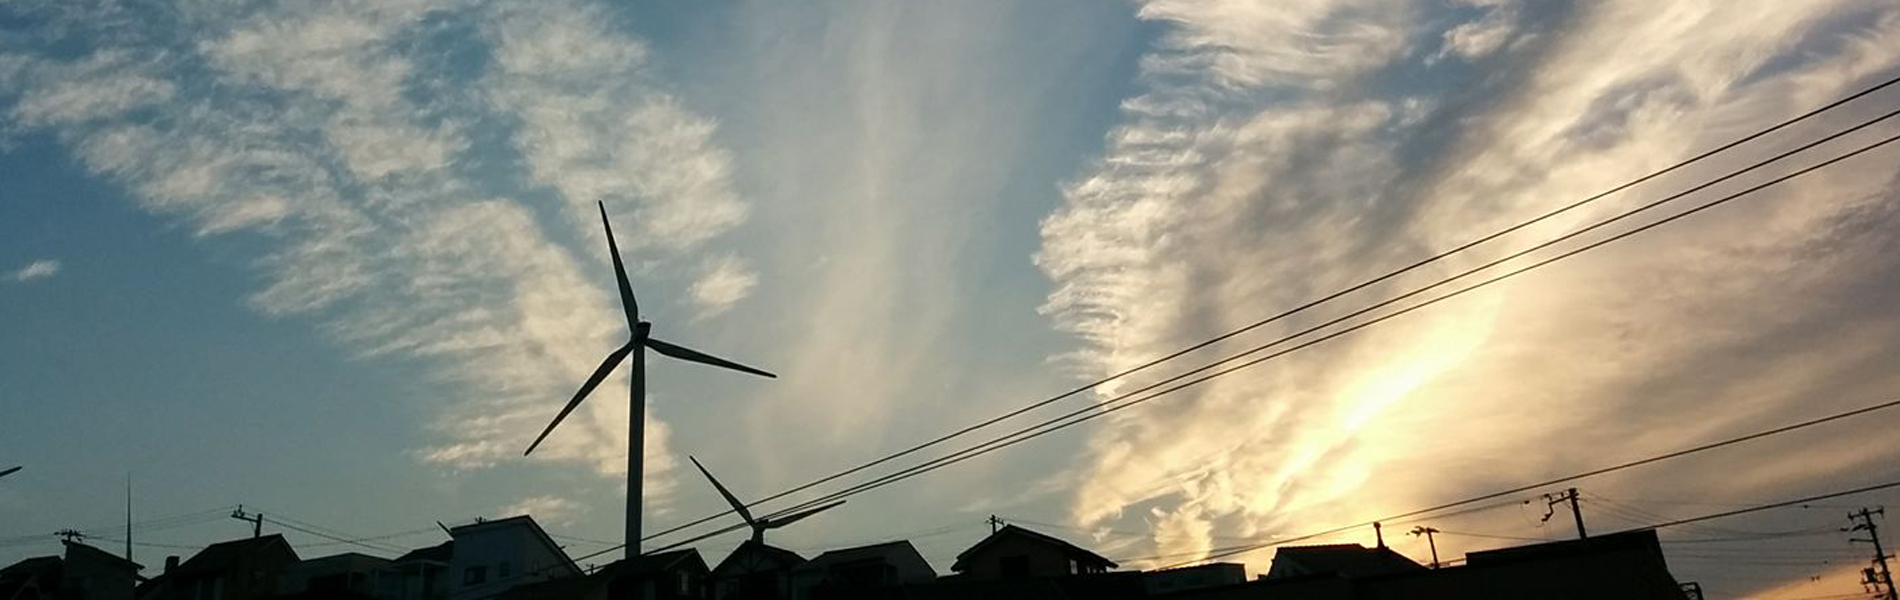 晴海ヶ丘の風車と空